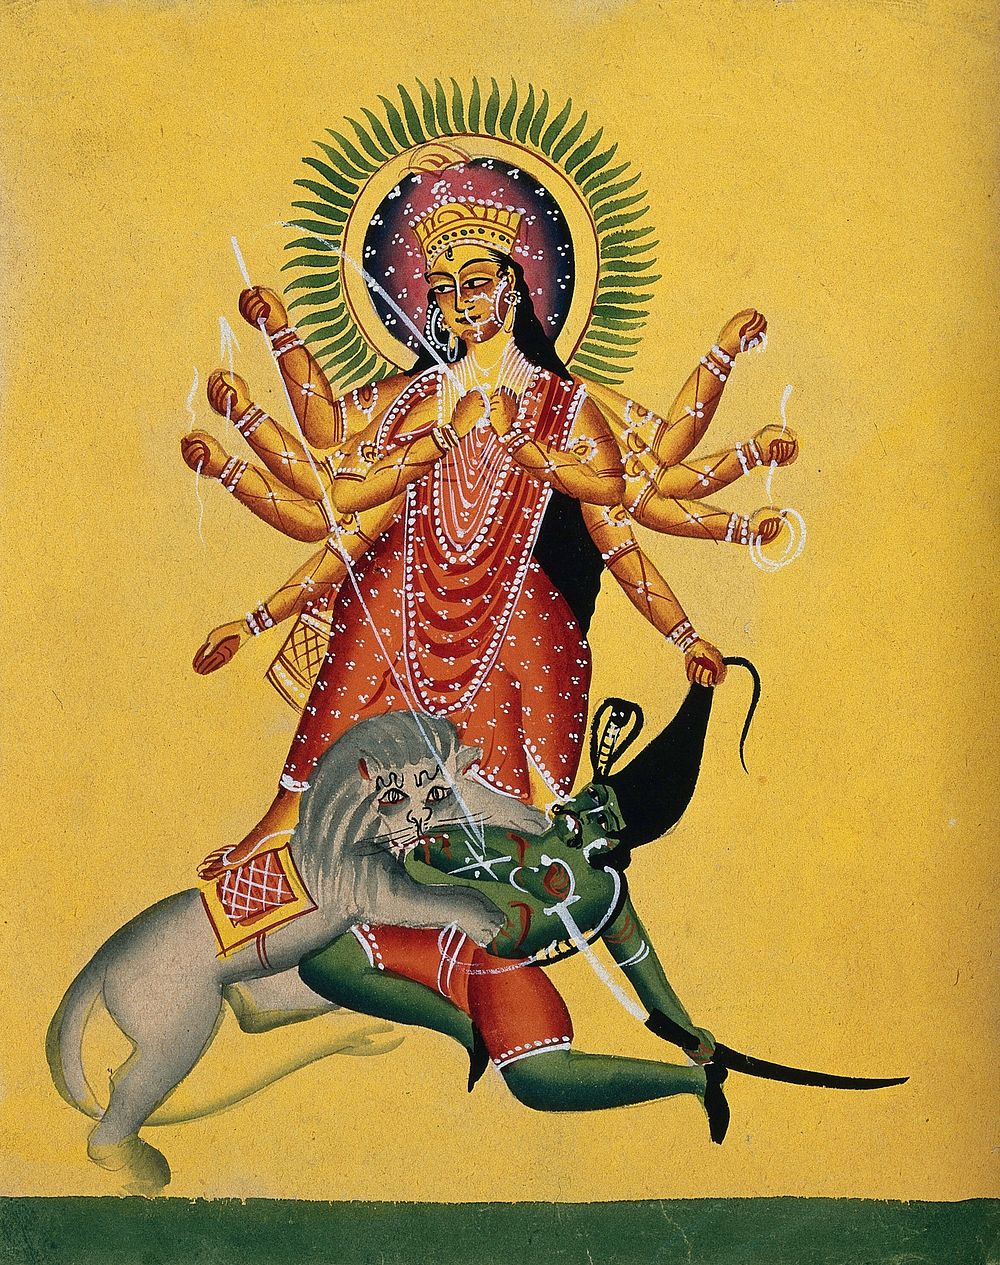 Durga kills the demon. Watercolour by an Indian artist, ca. 1890.